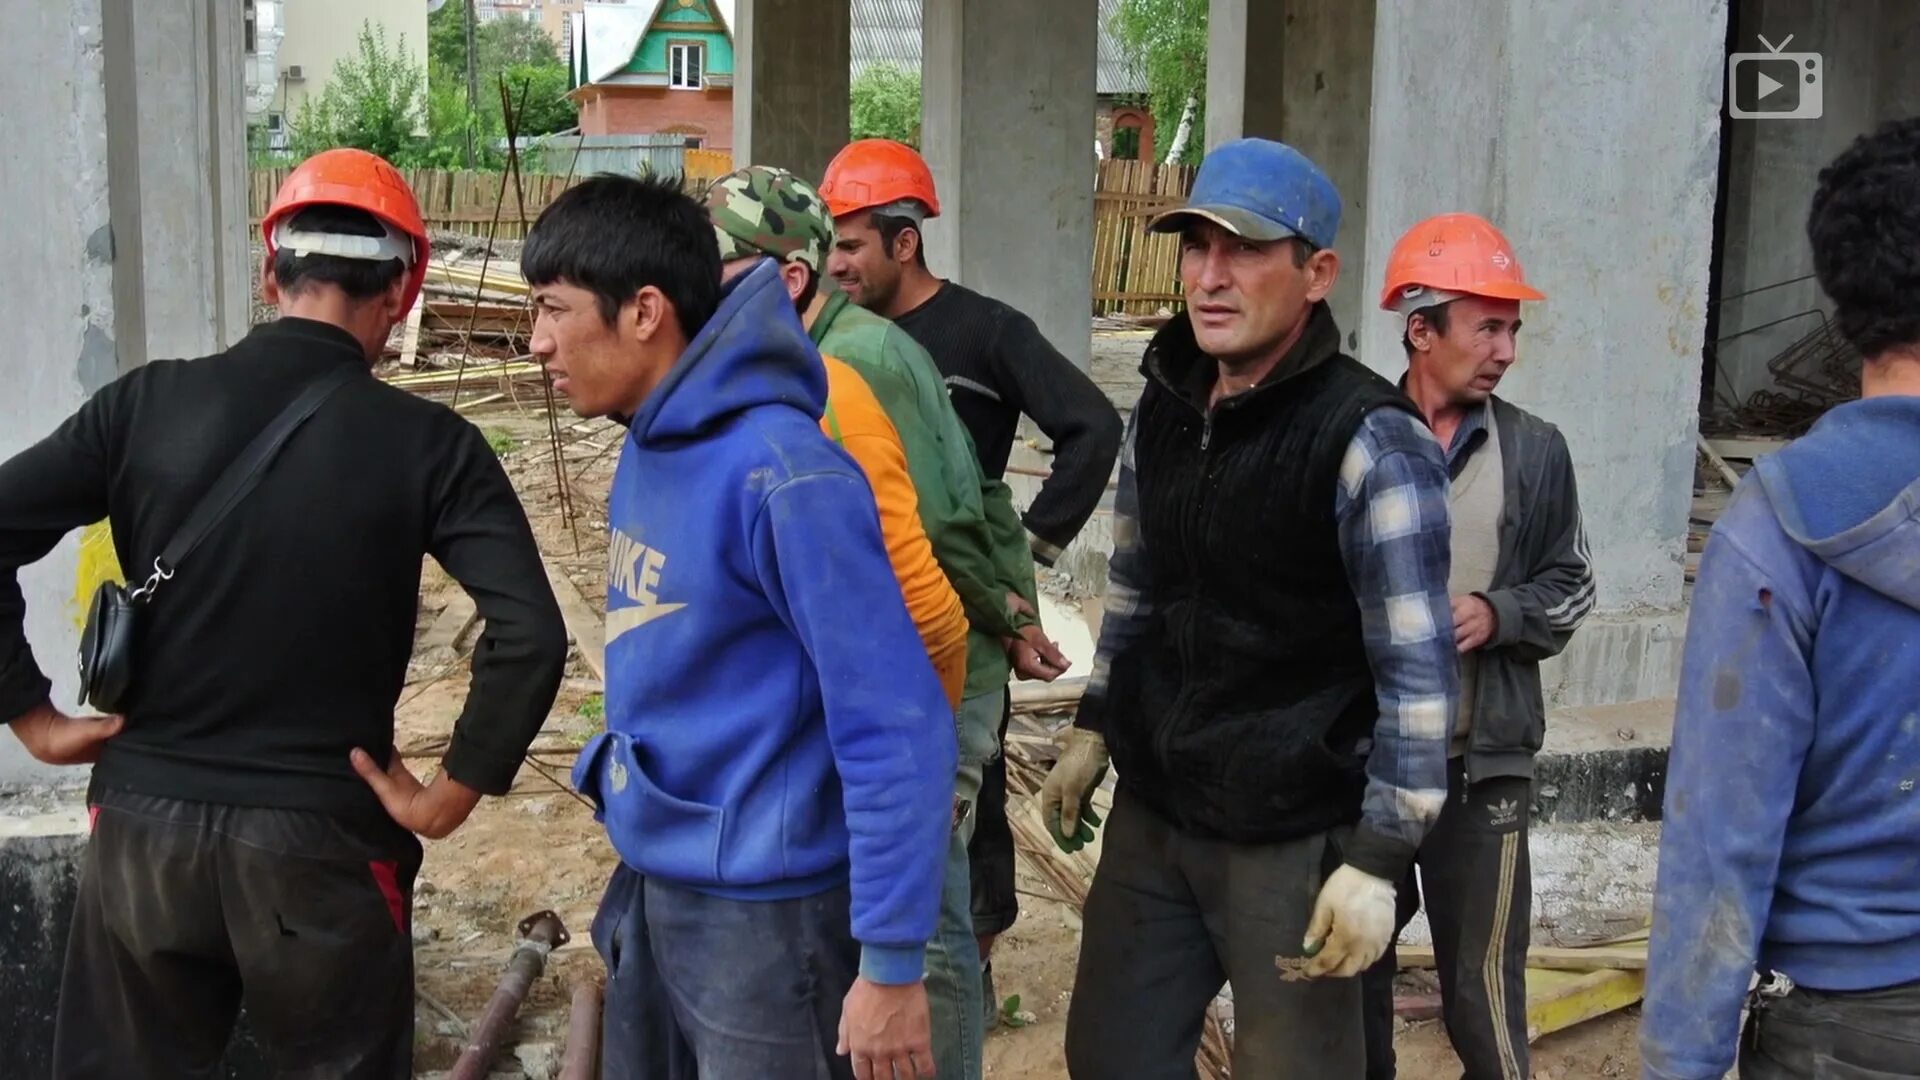 Таджикские рабочие. Таджики на стройке. Мигранты на стройке. Гастарбайтеры на стройке. Мигранты строители.